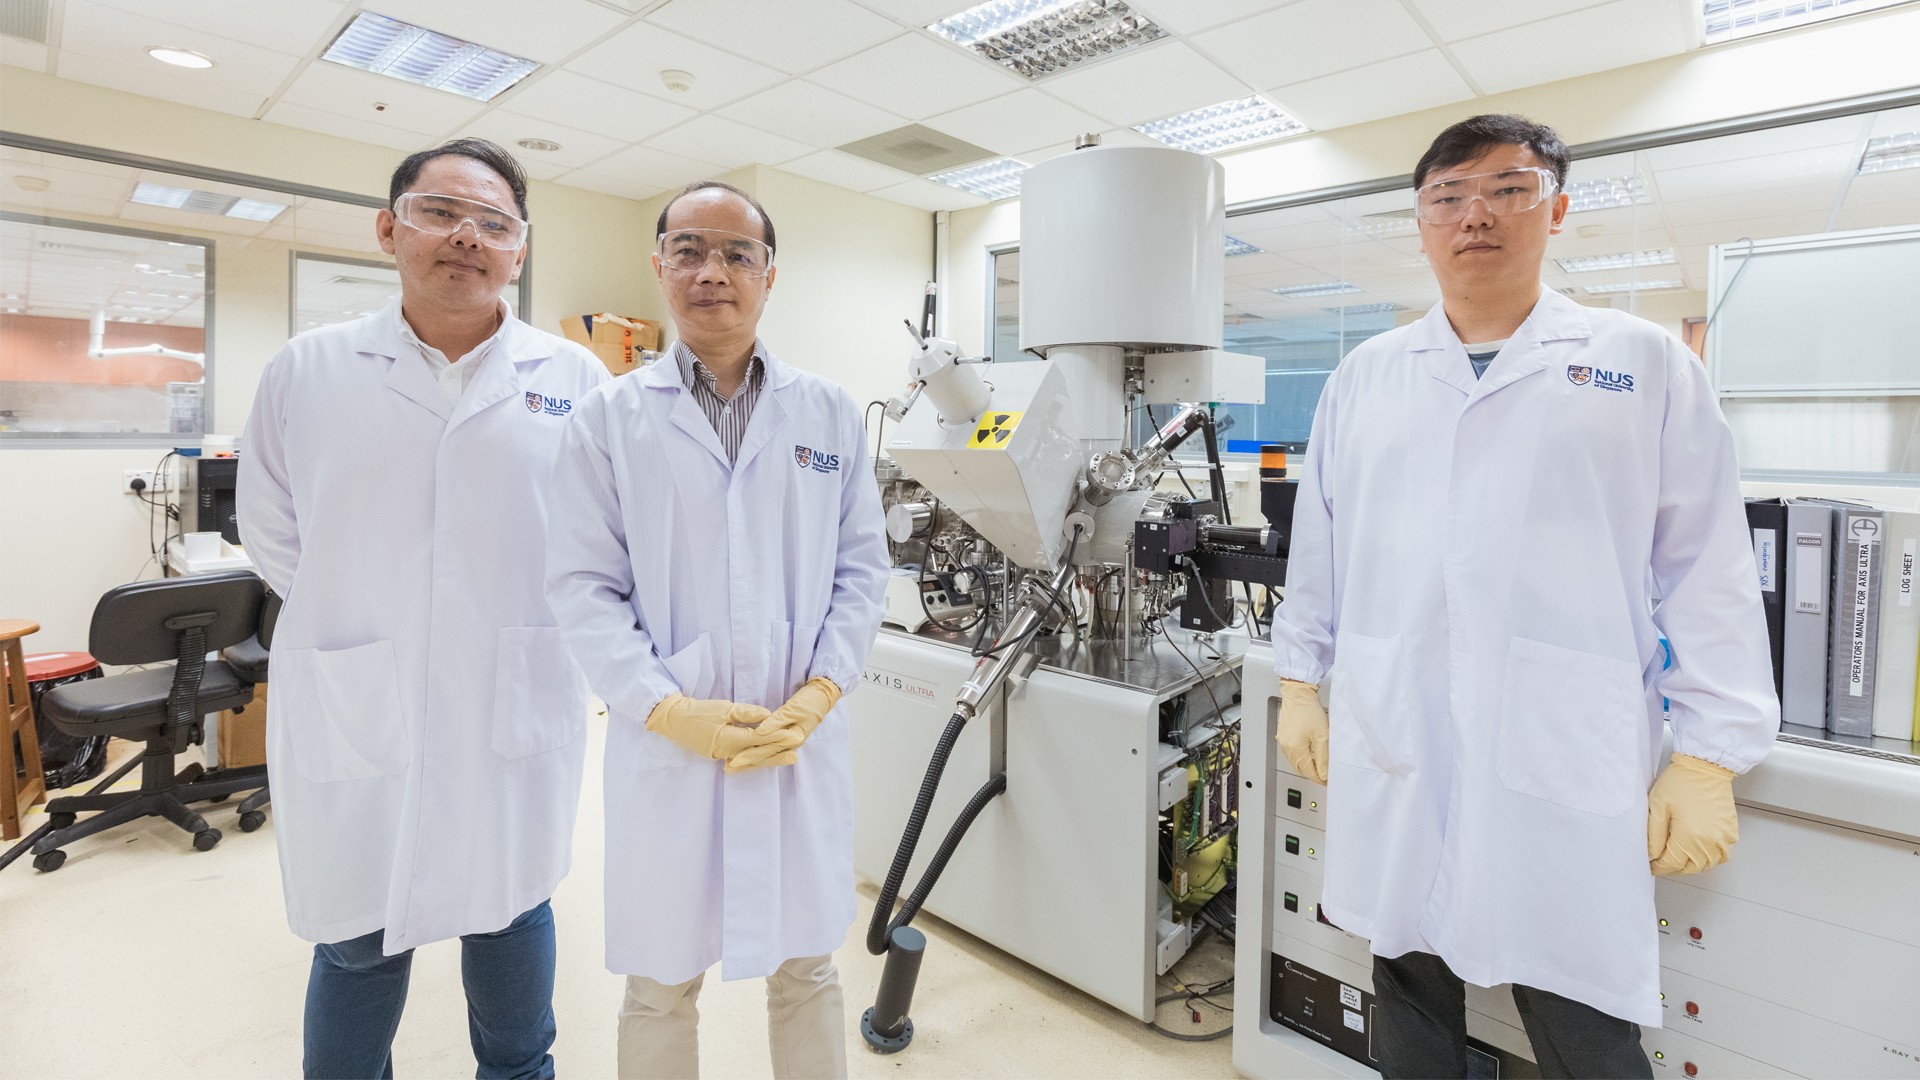 hidrogeno-barato-nus-singapur-investigadores